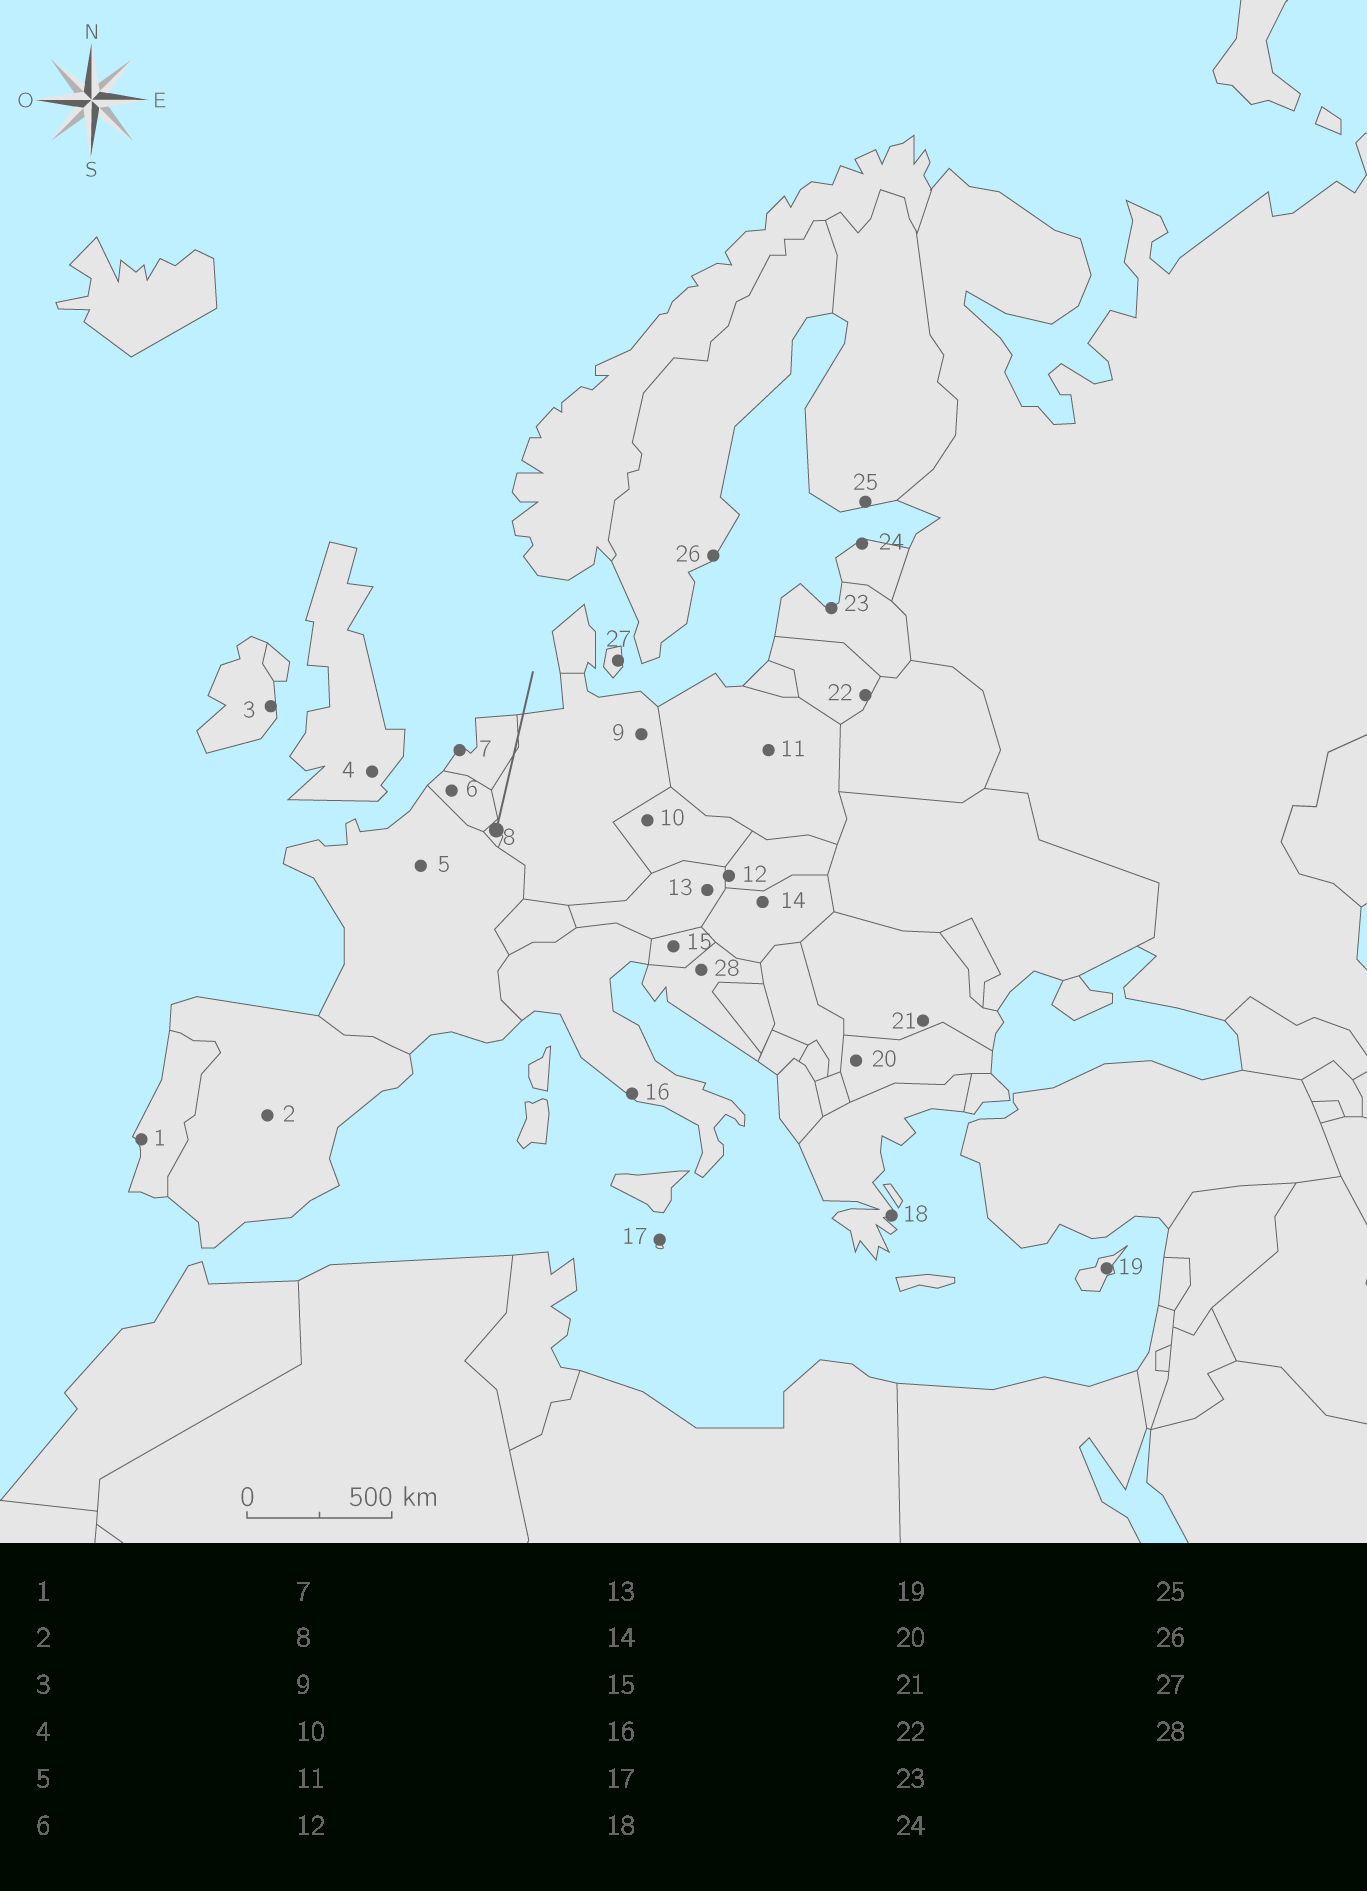 Compléter La Carte Des Etats Membres De L'union Européenne à Capitale Union Européenne